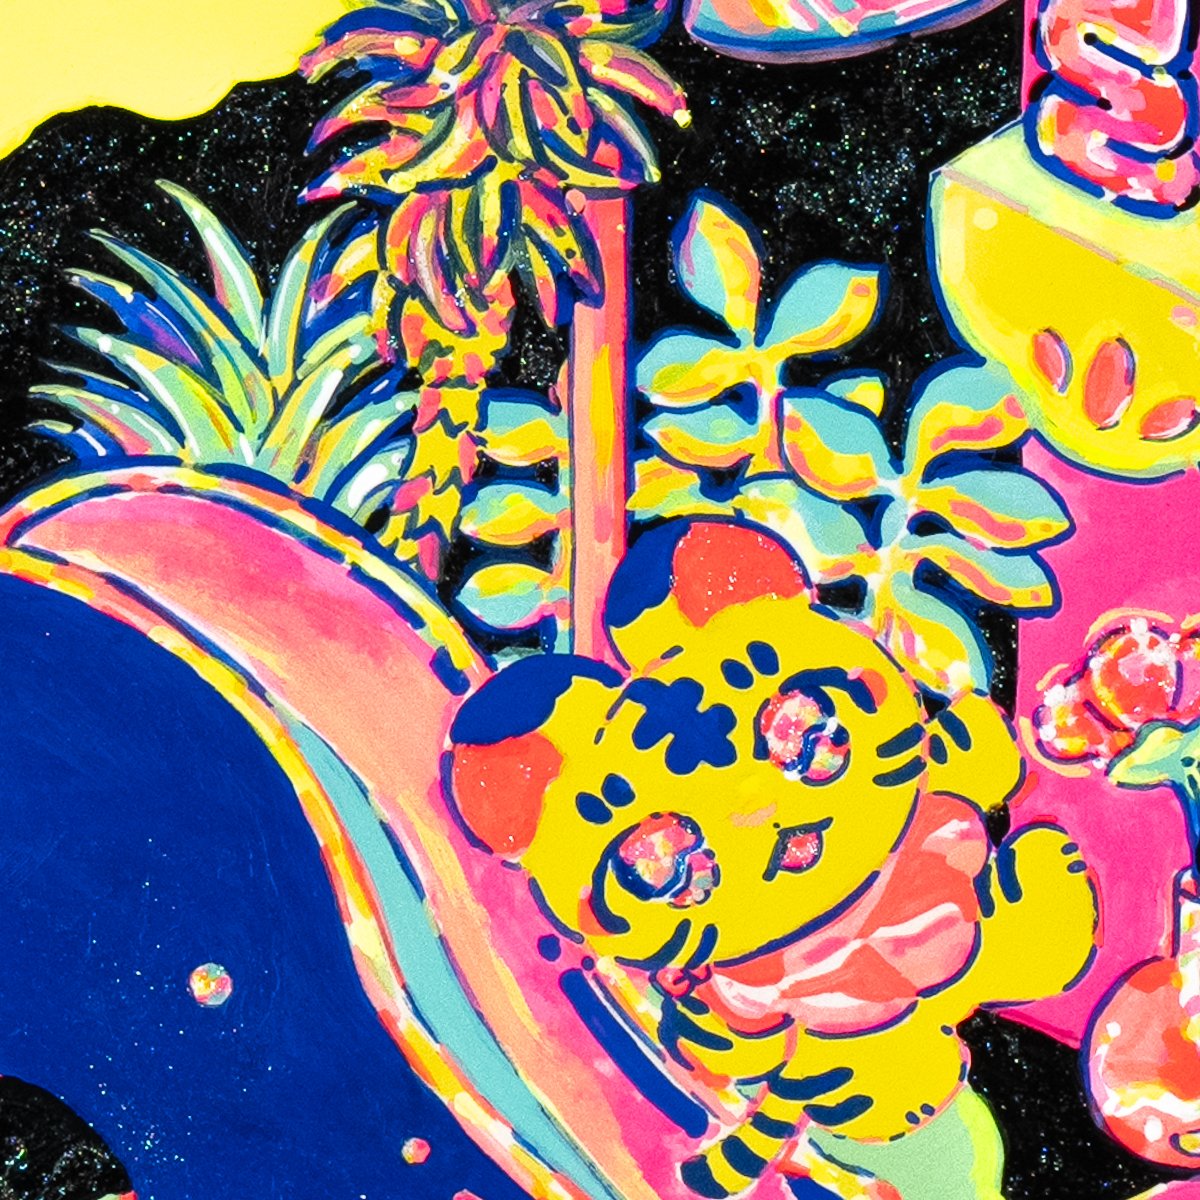 「寝室ダイブ#メゾンド聖地 」|中村杏子🦊委託5/31まで愛と狂気のマーケットのイラスト